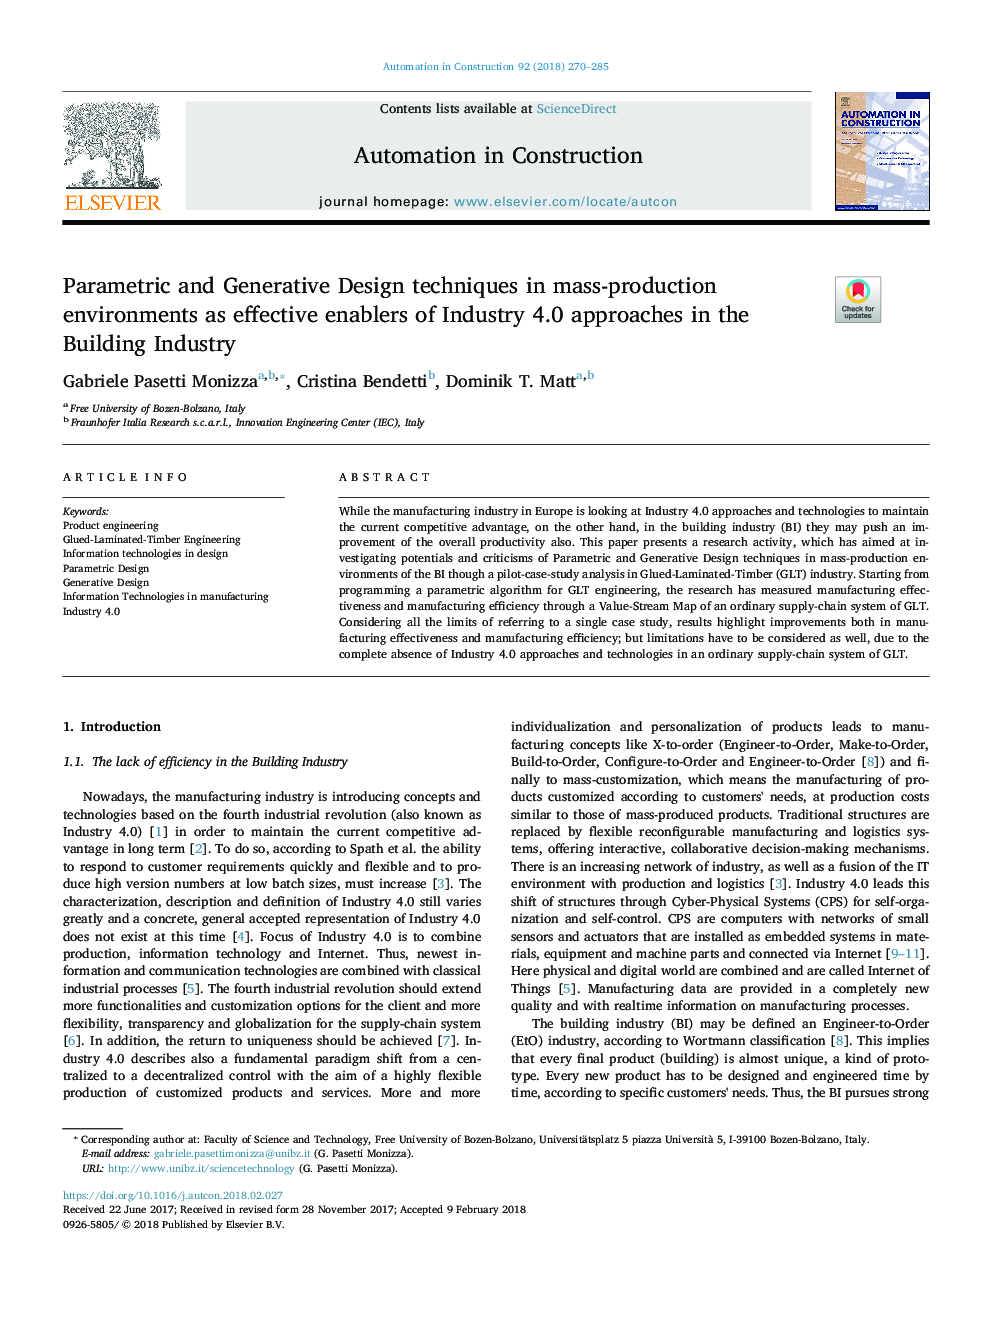 تکنیک های طراحی پارامتریک و ژنراتور در محیط های تولید انبوه به عنوان عوامل موثر در رویکرد صنعت 4.0 در صنعت ساختمان 